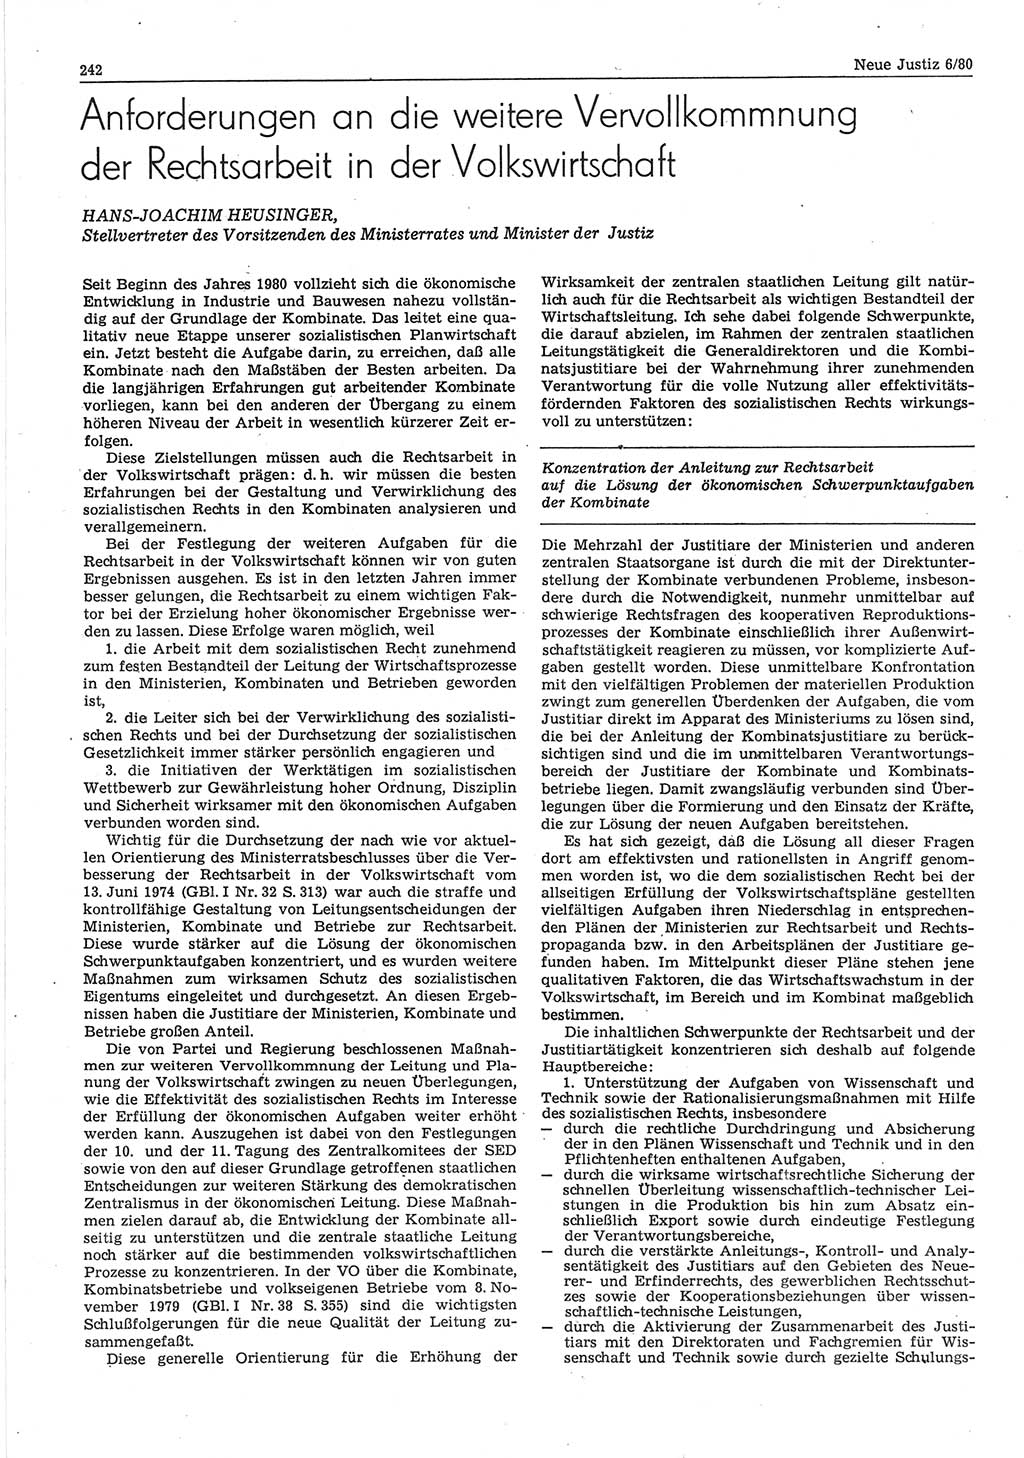 Neue Justiz (NJ), Zeitschrift für sozialistisches Recht und Gesetzlichkeit [Deutsche Demokratische Republik (DDR)], 34. Jahrgang 1980, Seite 242 (NJ DDR 1980, S. 242)